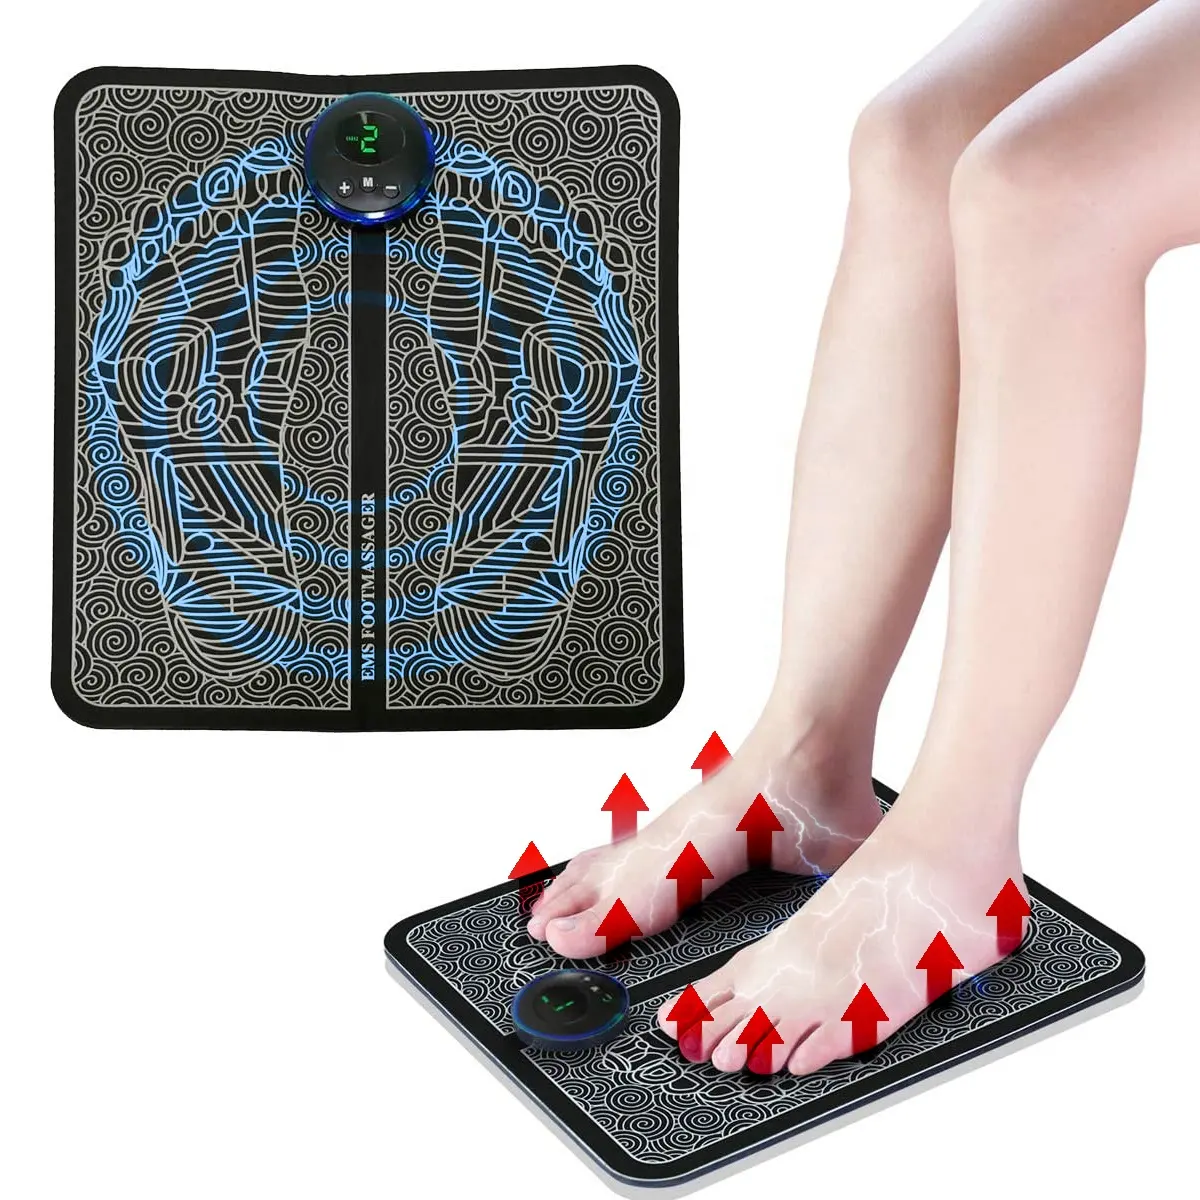 Nuovo prodotto self care ems foot mat massage machine per massaggiatore plantare e massaggiatore per gambe